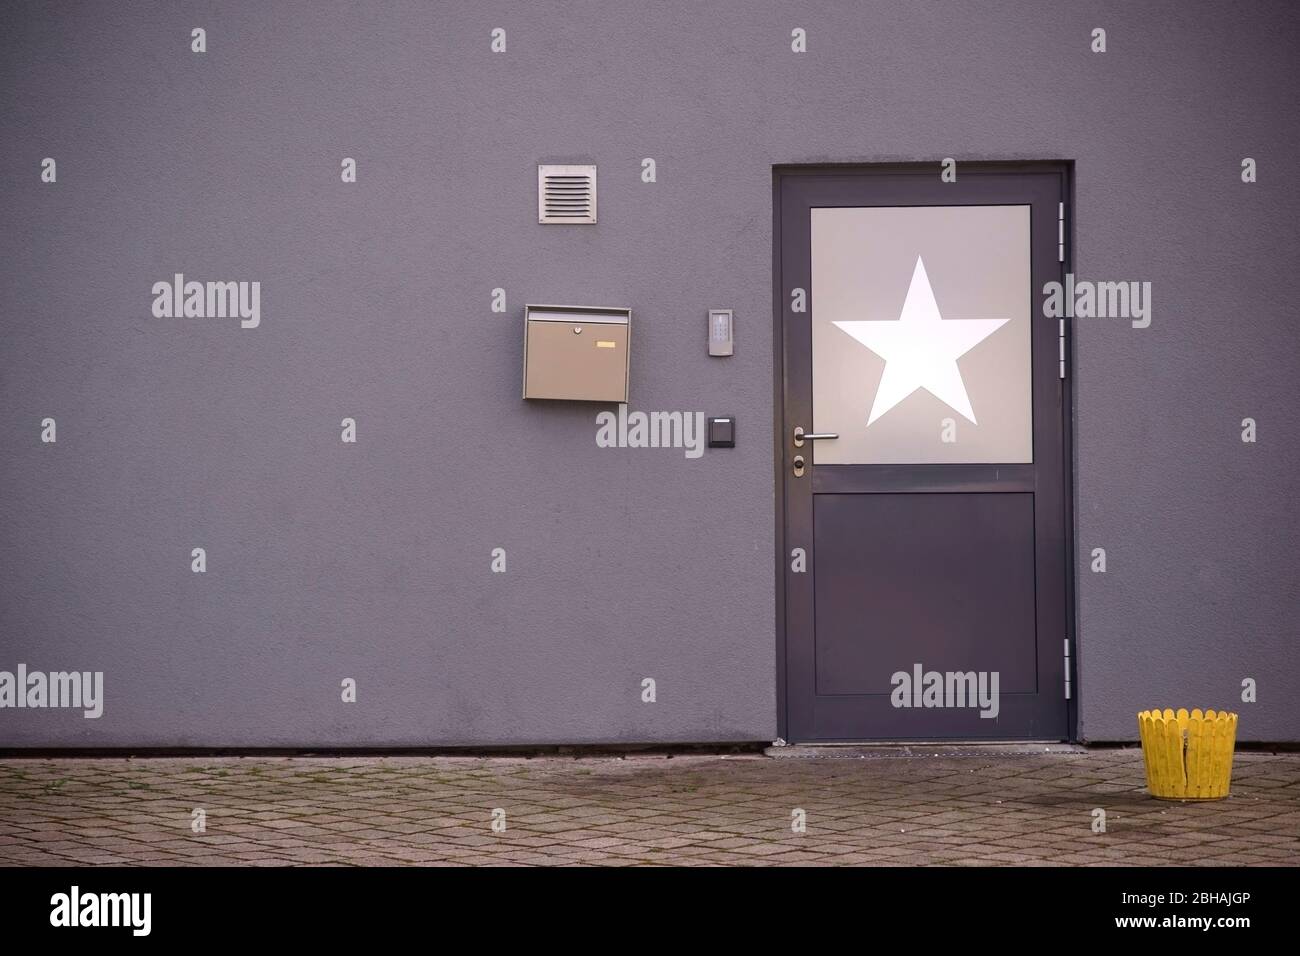 Der Nebeneingang zu einer Spielhalle in einem Wohn- und Geschäftsgebäude mit einer Tür auf der ein Stern geklebt ist. Foto Stock